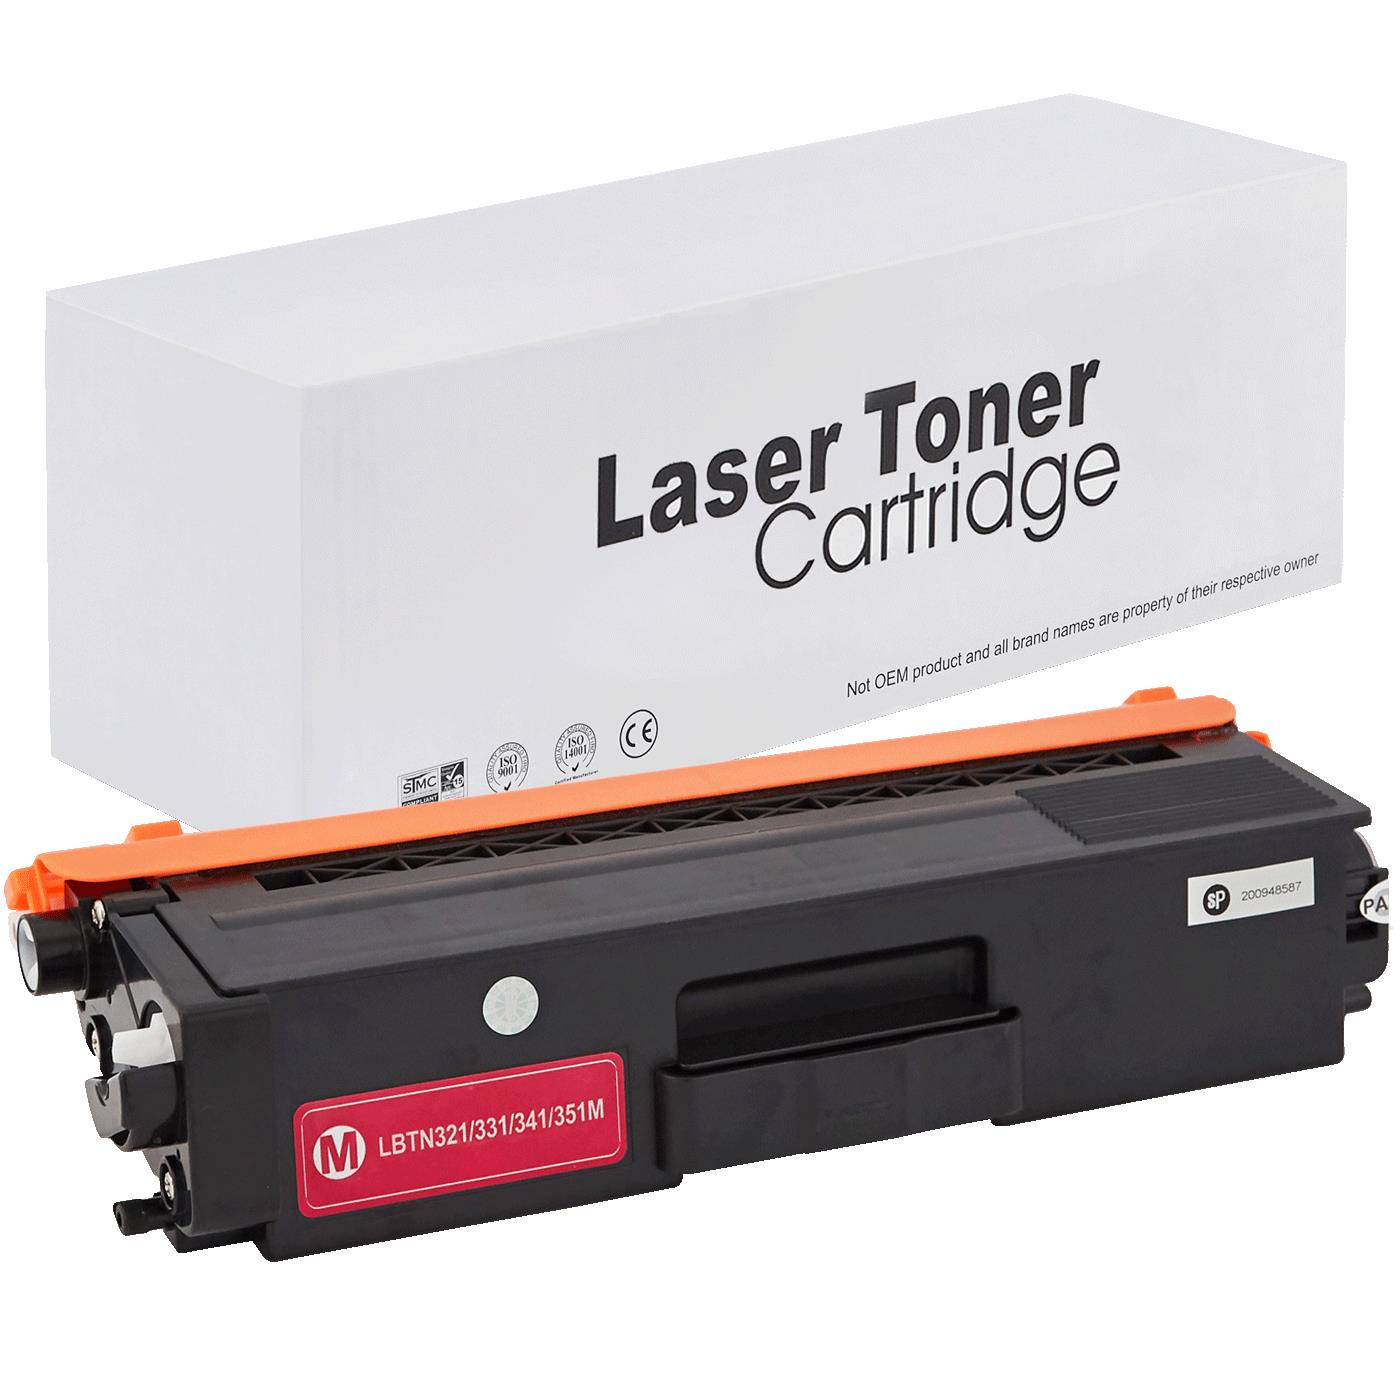 съвместима тонер касета за принтери и печатащи устройства на Brother DCP-L 8450 CDW Toner BR-321M | TN321M. Ниски цени, прецизно изпълнение, високо качество.